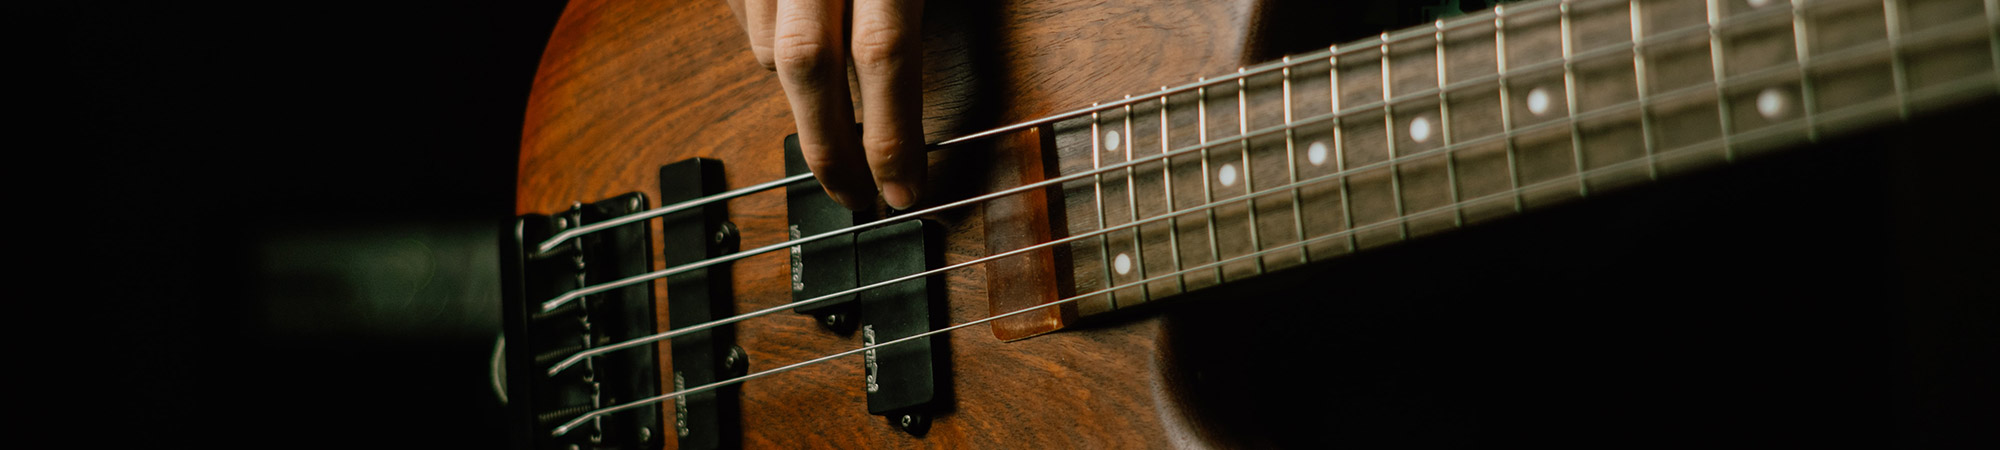 Fichier 3D Phi-Bass Guitare basse électrique à 4 cordes imprimée